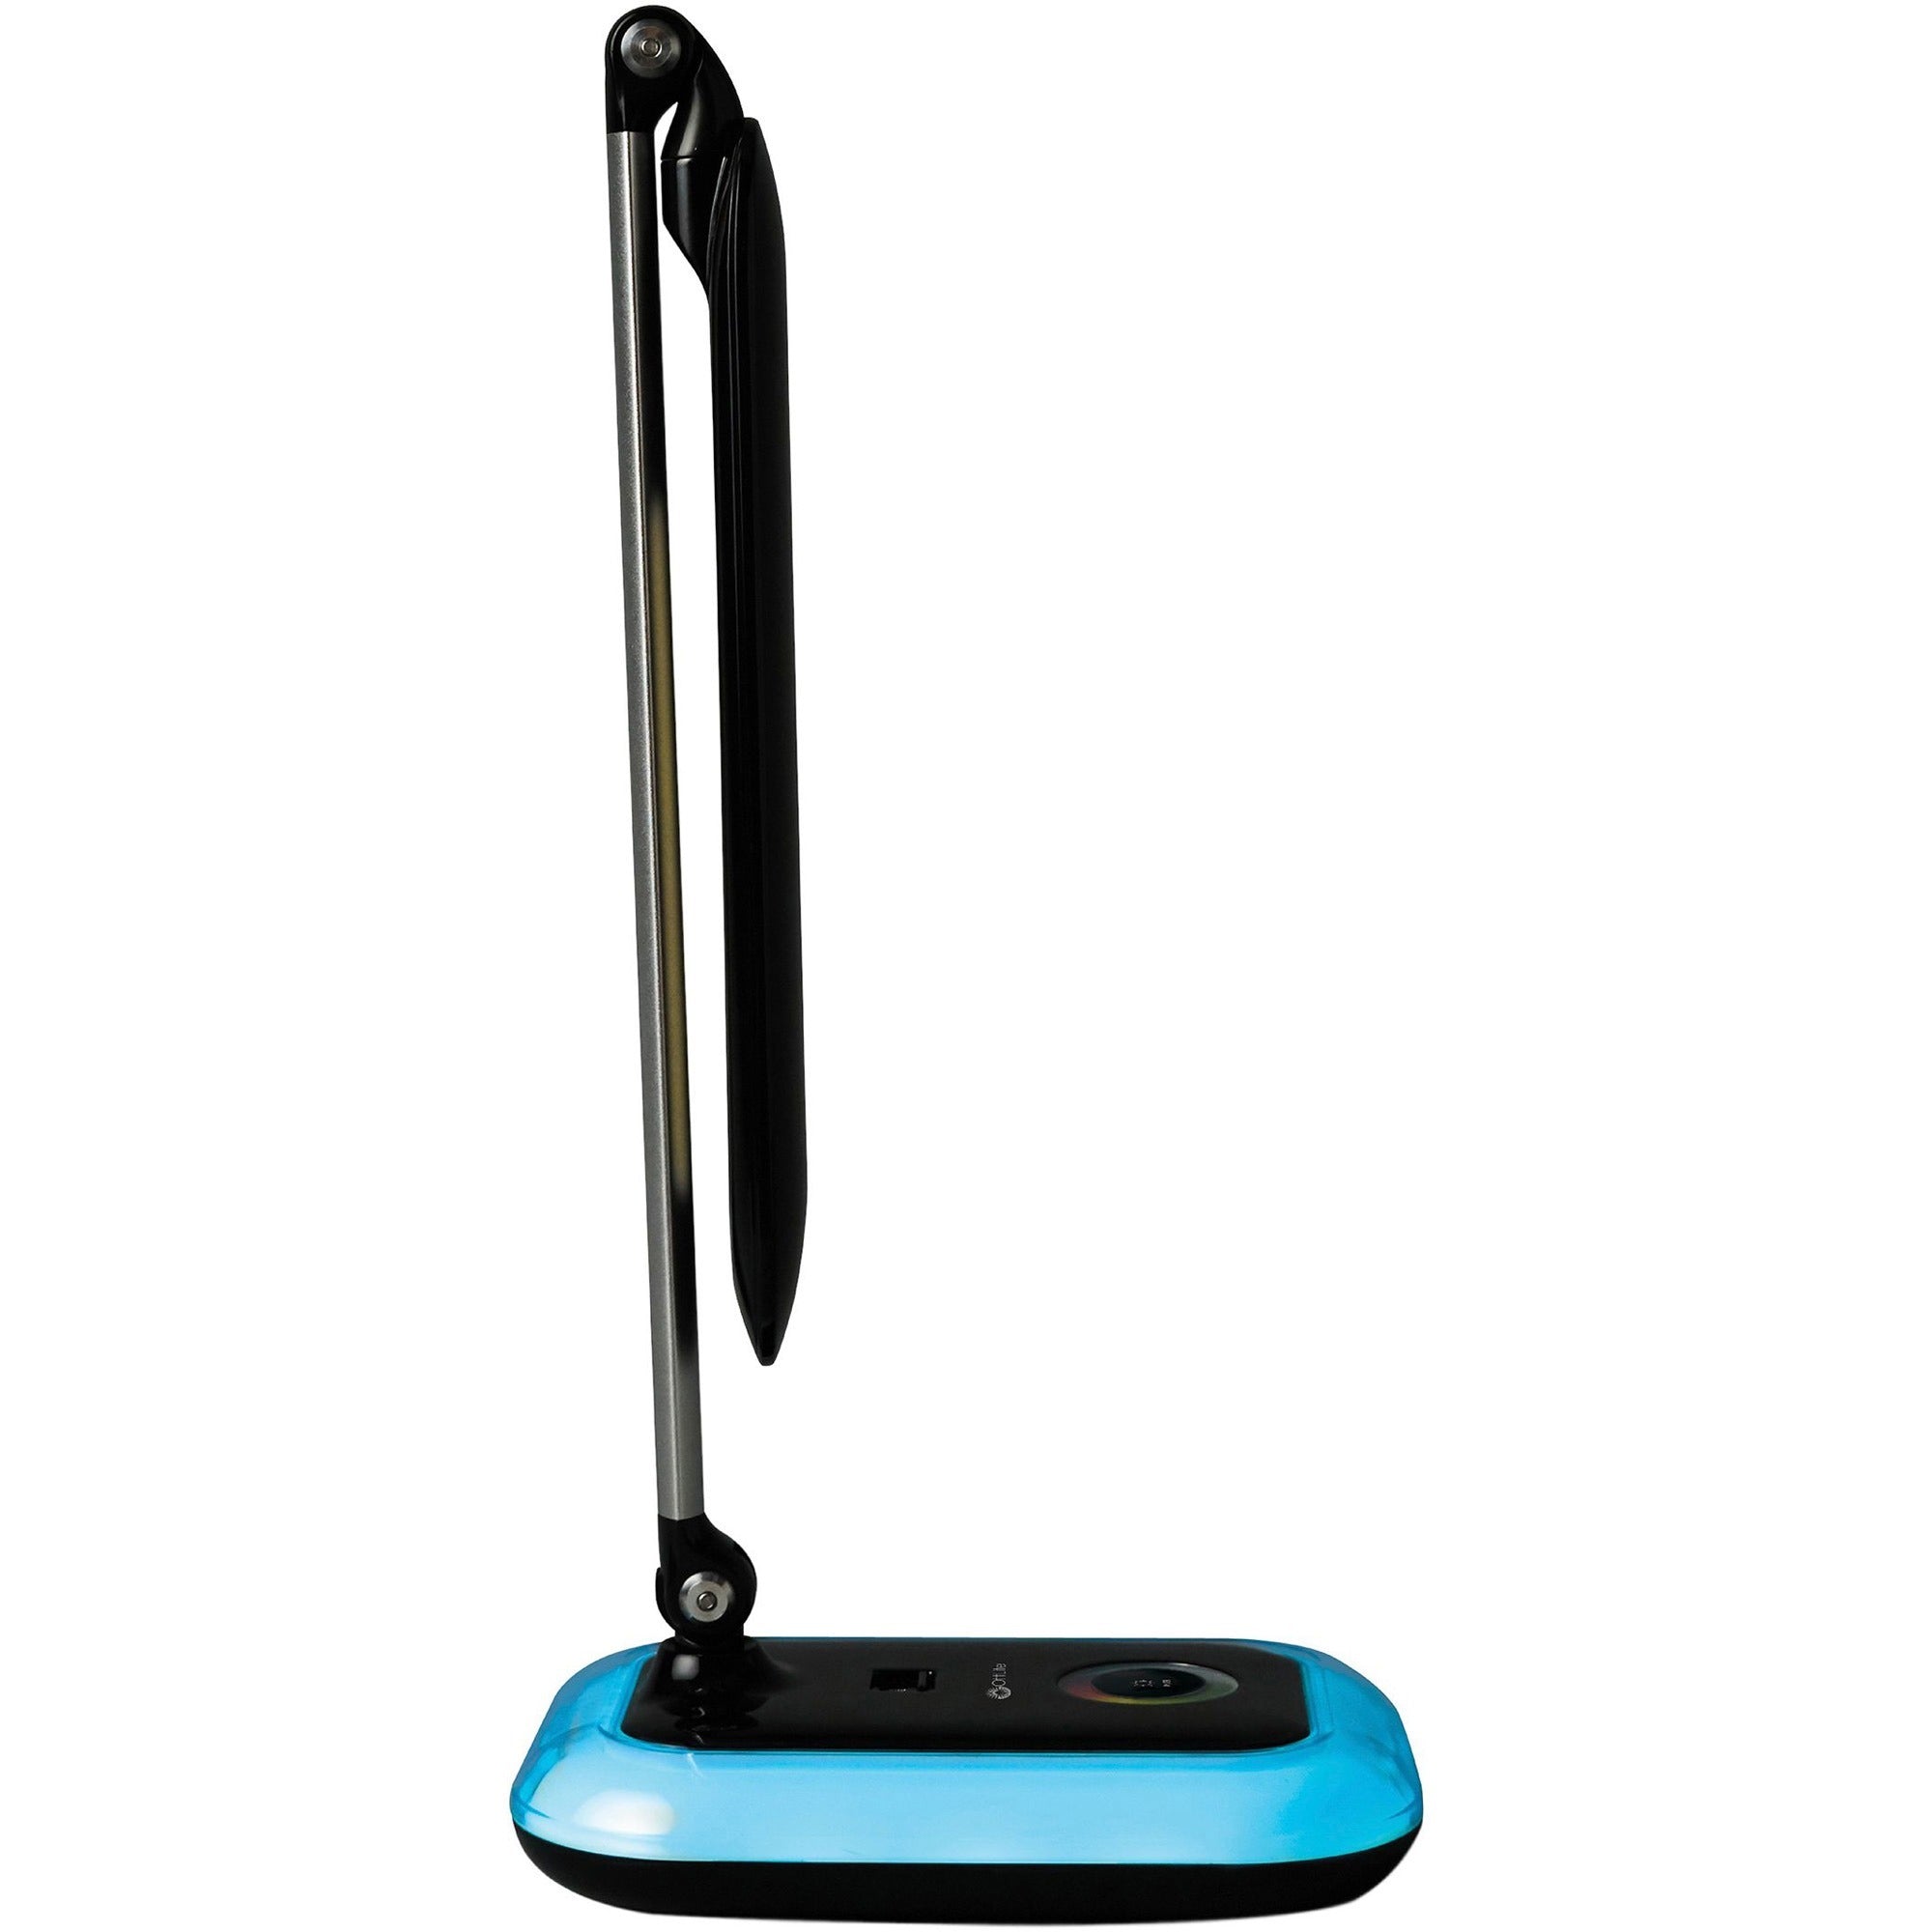 ottlite-wellness-desk-lamp-8-w-led-bulb-touch-activated-adjustable-arm-usb-charging-adjustable-brightness-adjustable-shade-450-lm-lumens-desk-mountable-black-black-for-tablet-phone_ottf1by9g59shpr - 3